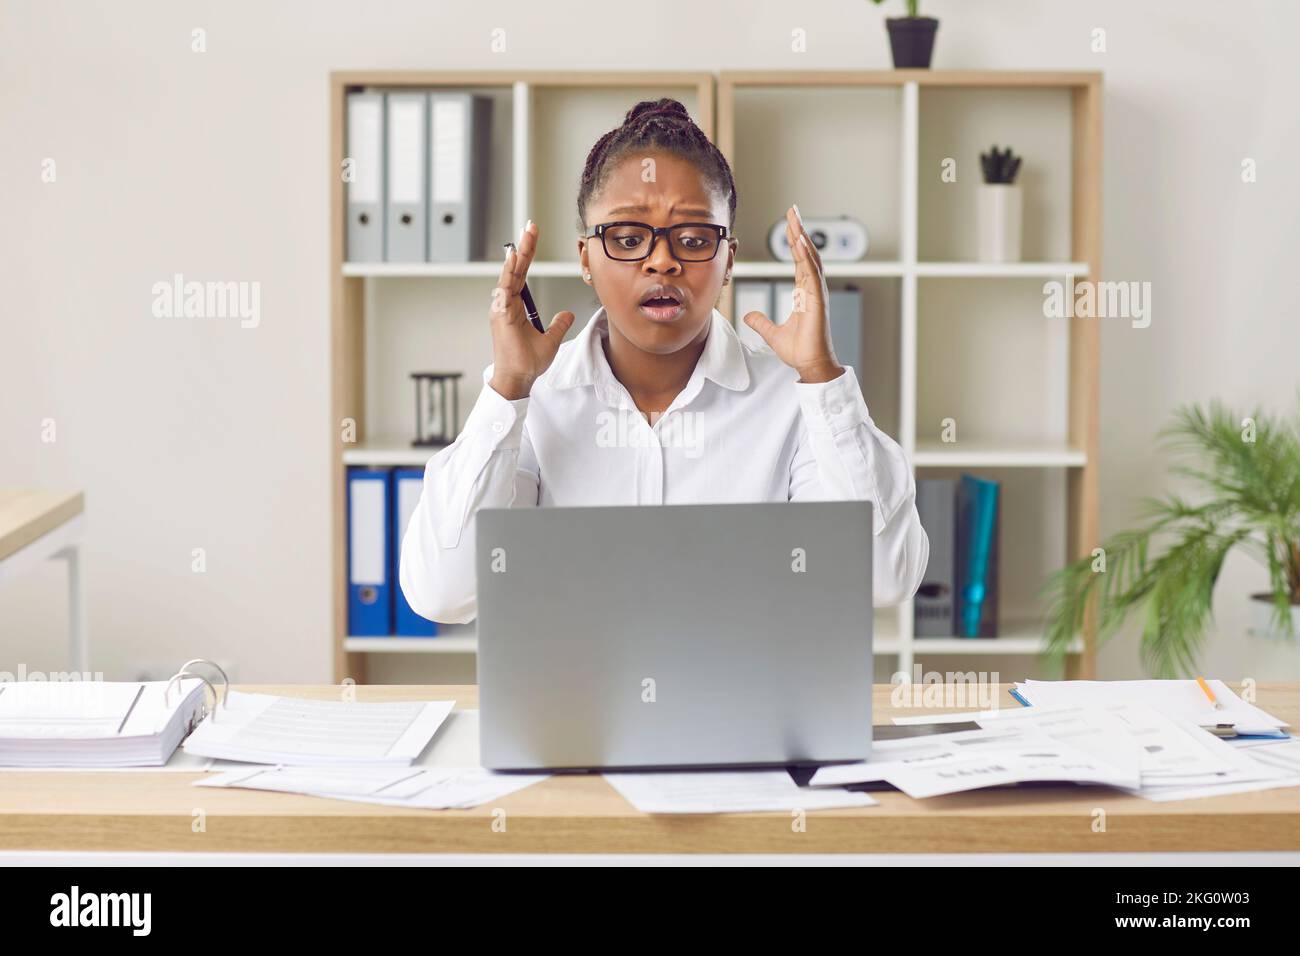 Une employée de bureau ayant un problème en raison d'une erreur sur son ordinateur portable dans le bureau Banque D'Images